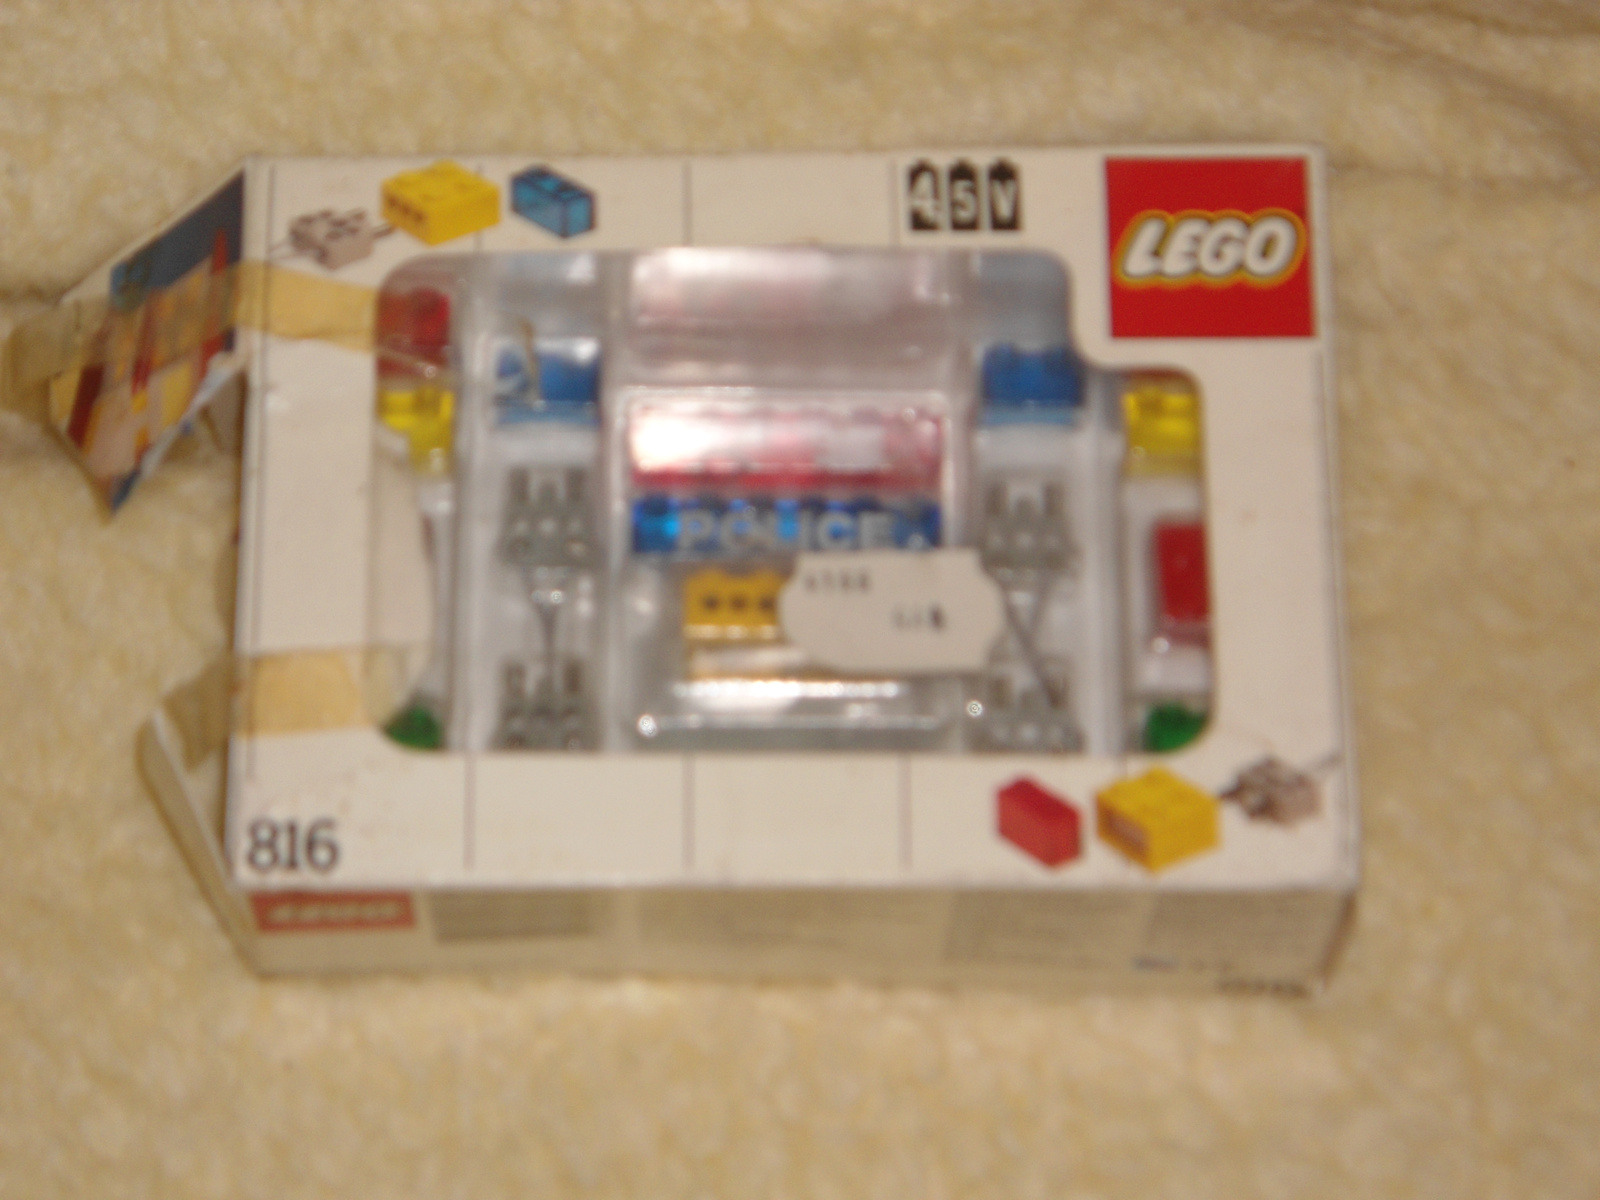 Lego 816 Világító kockák 1987, nem használt